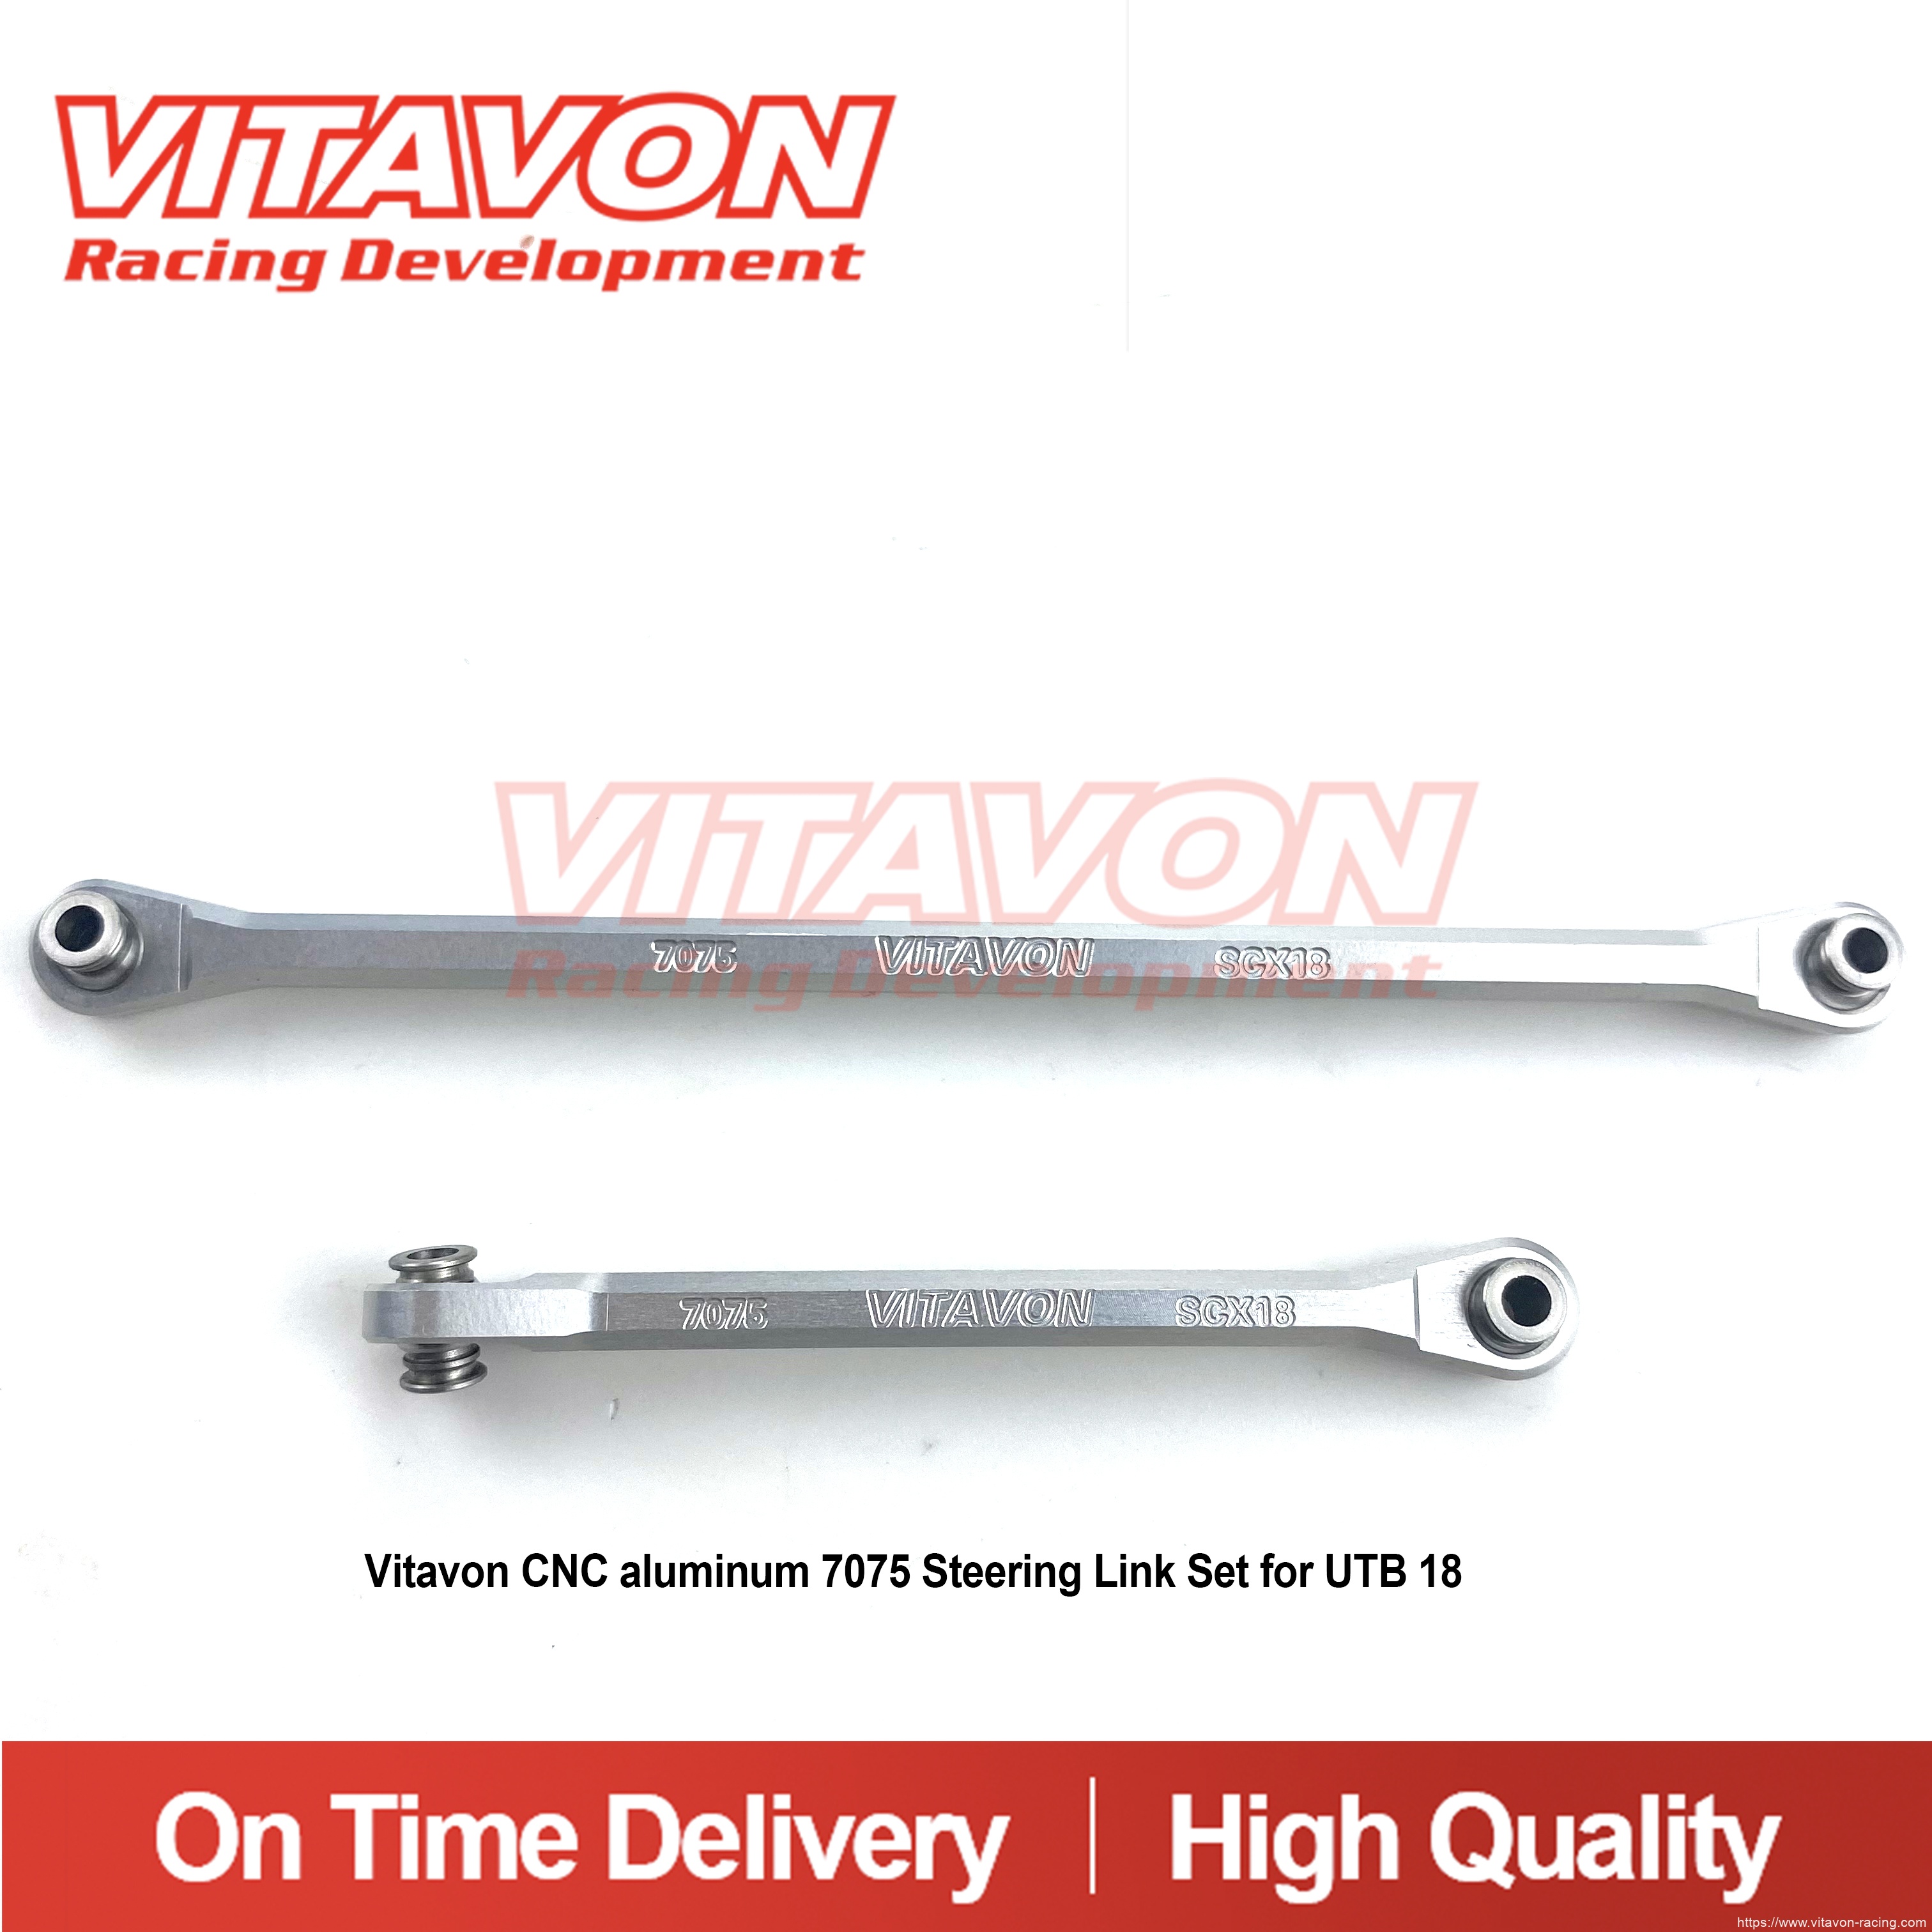 Vitavon CNC aluminum 7075 Steering Link Set for UTB 18